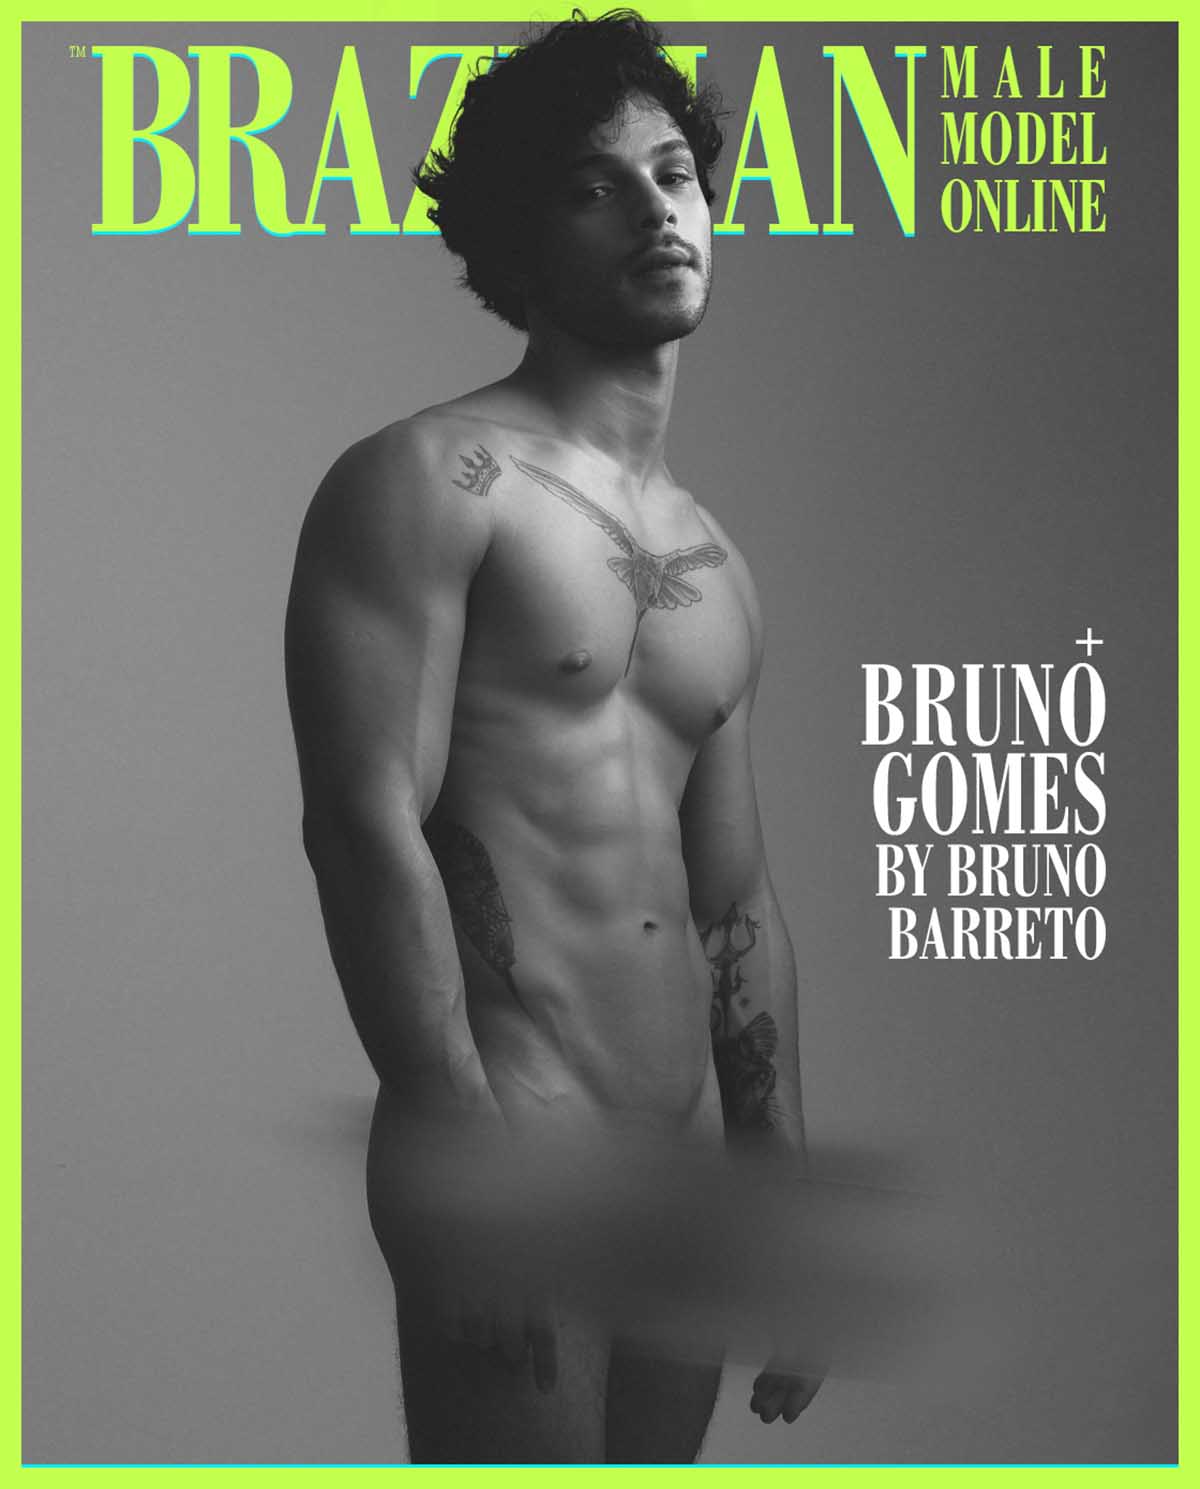 Bruno Gomes by Bruno Barreto